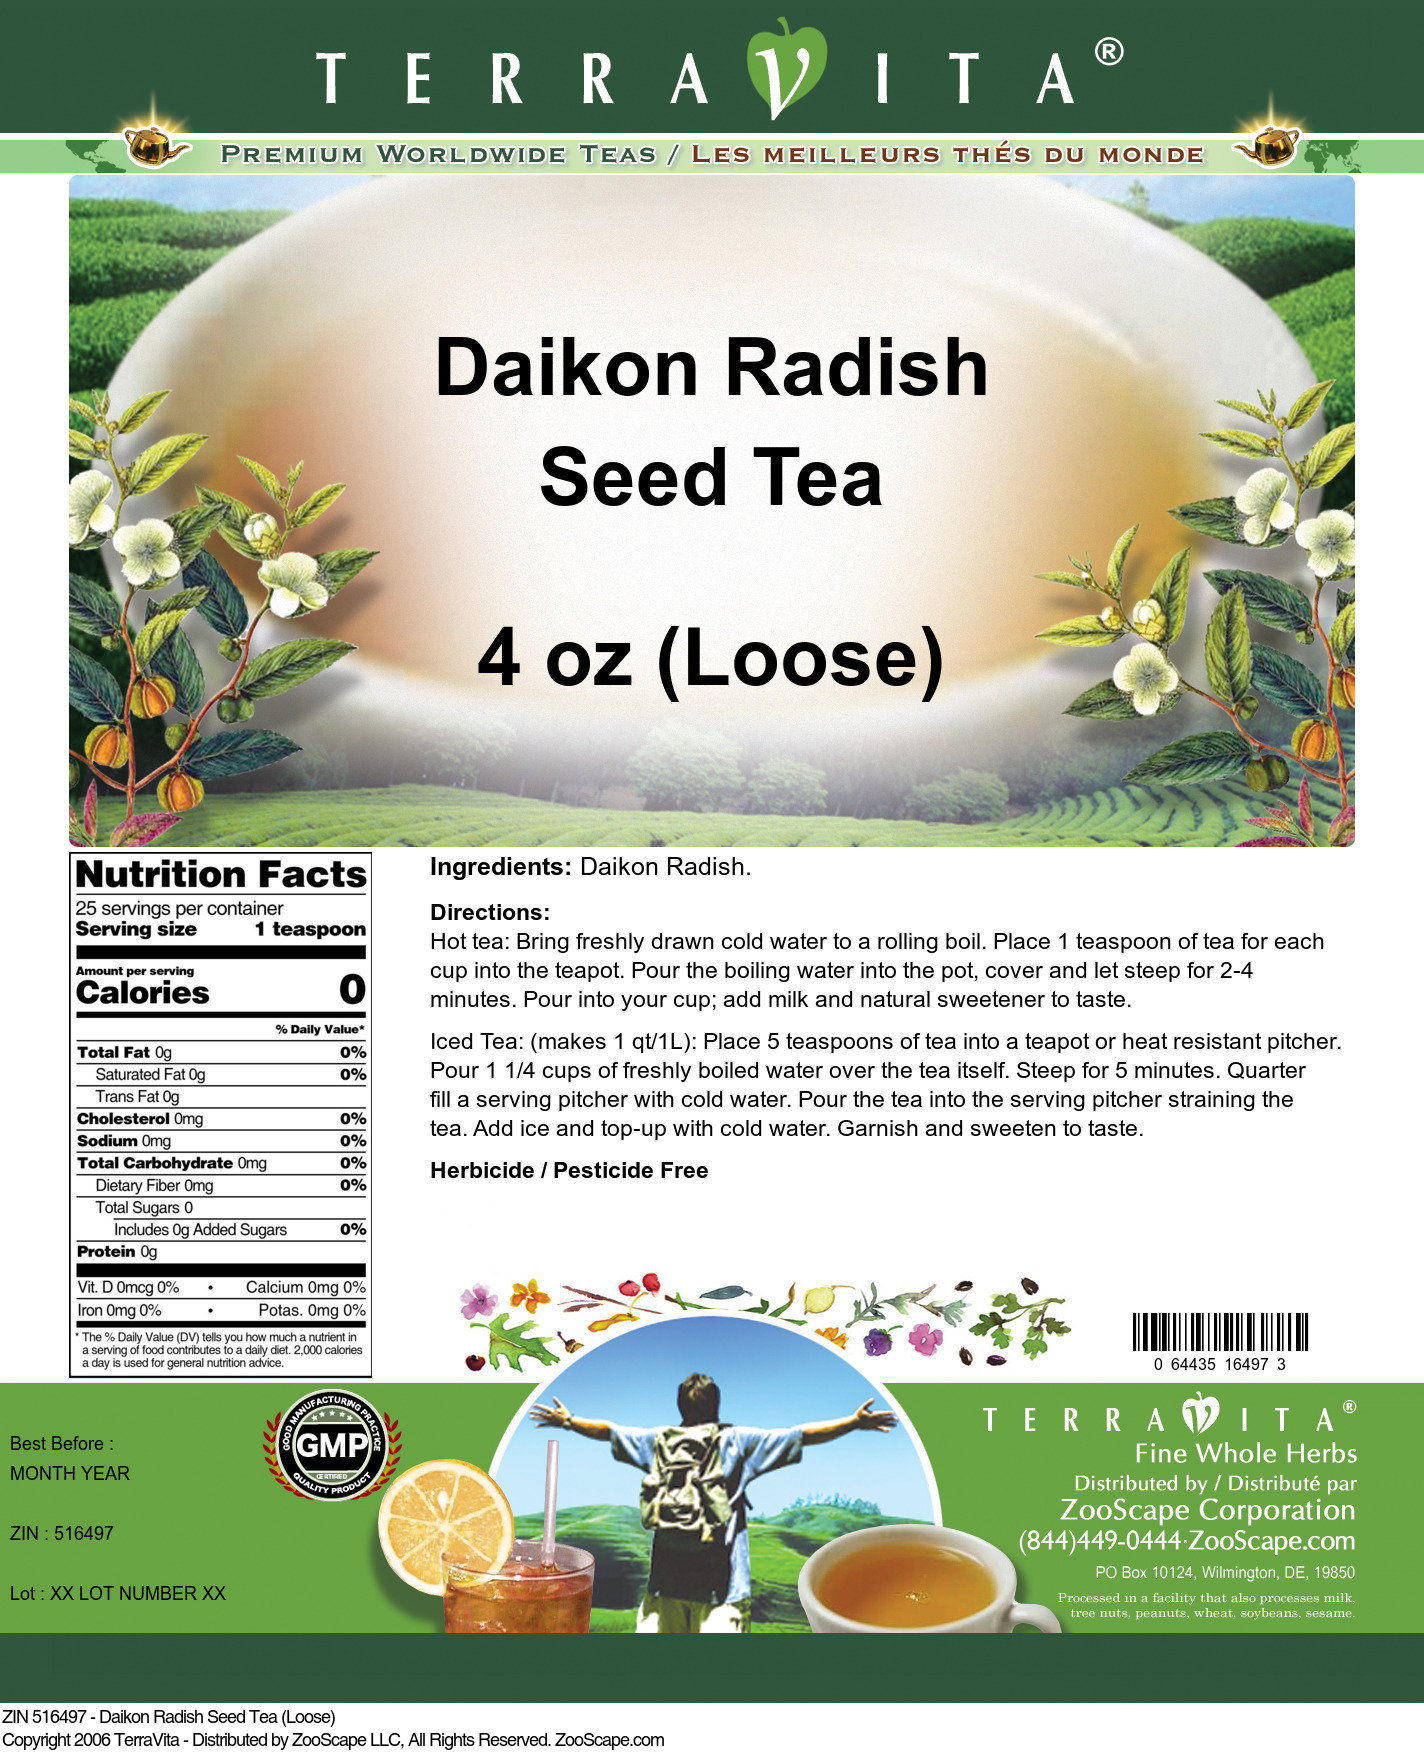 Daikon Radish Seed Tea (Loose) - Label